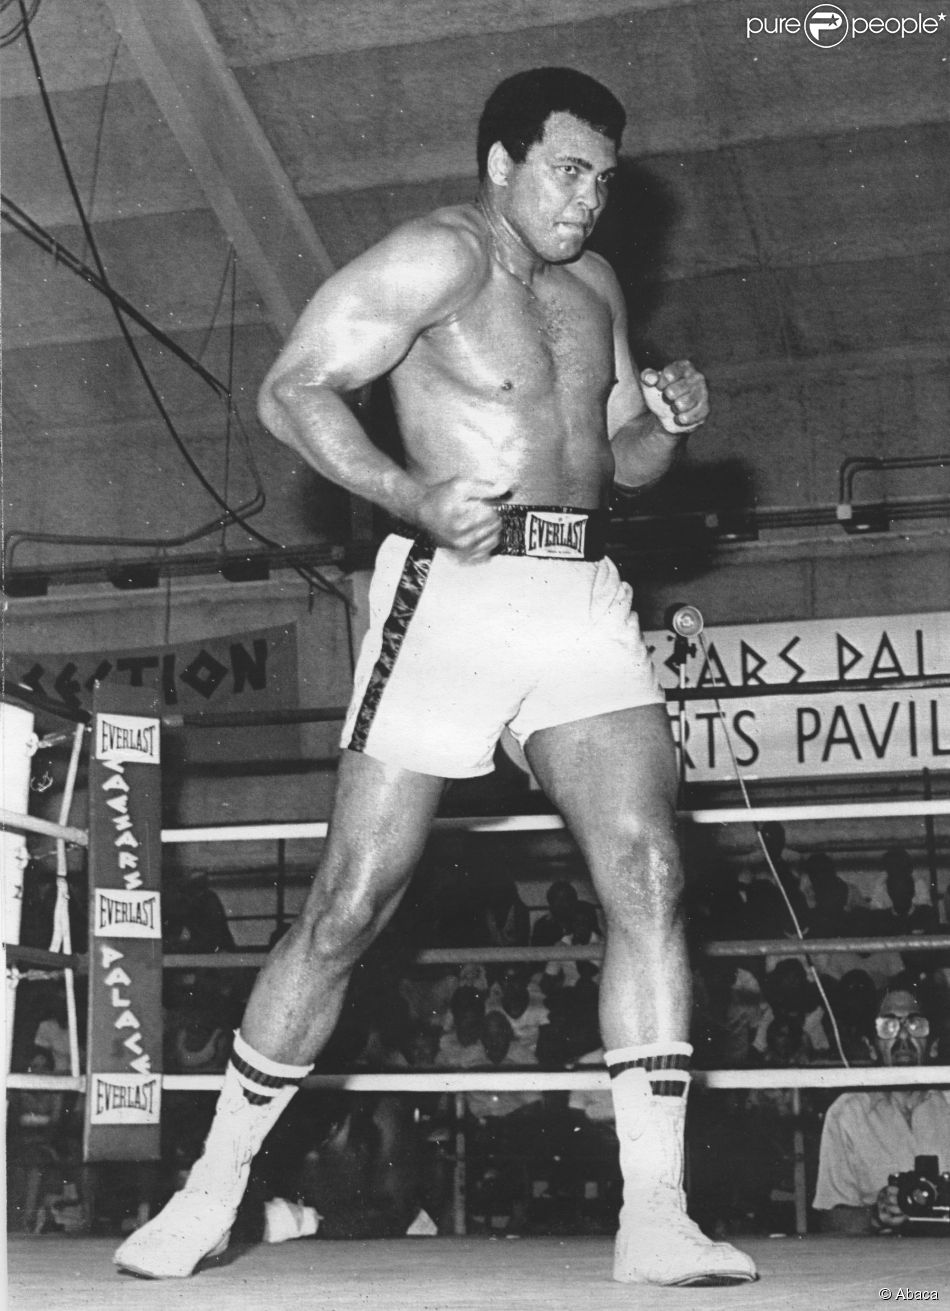 Mohamed Ali le 17 septembre 1980 au Ceasars Palace de Las Vegas